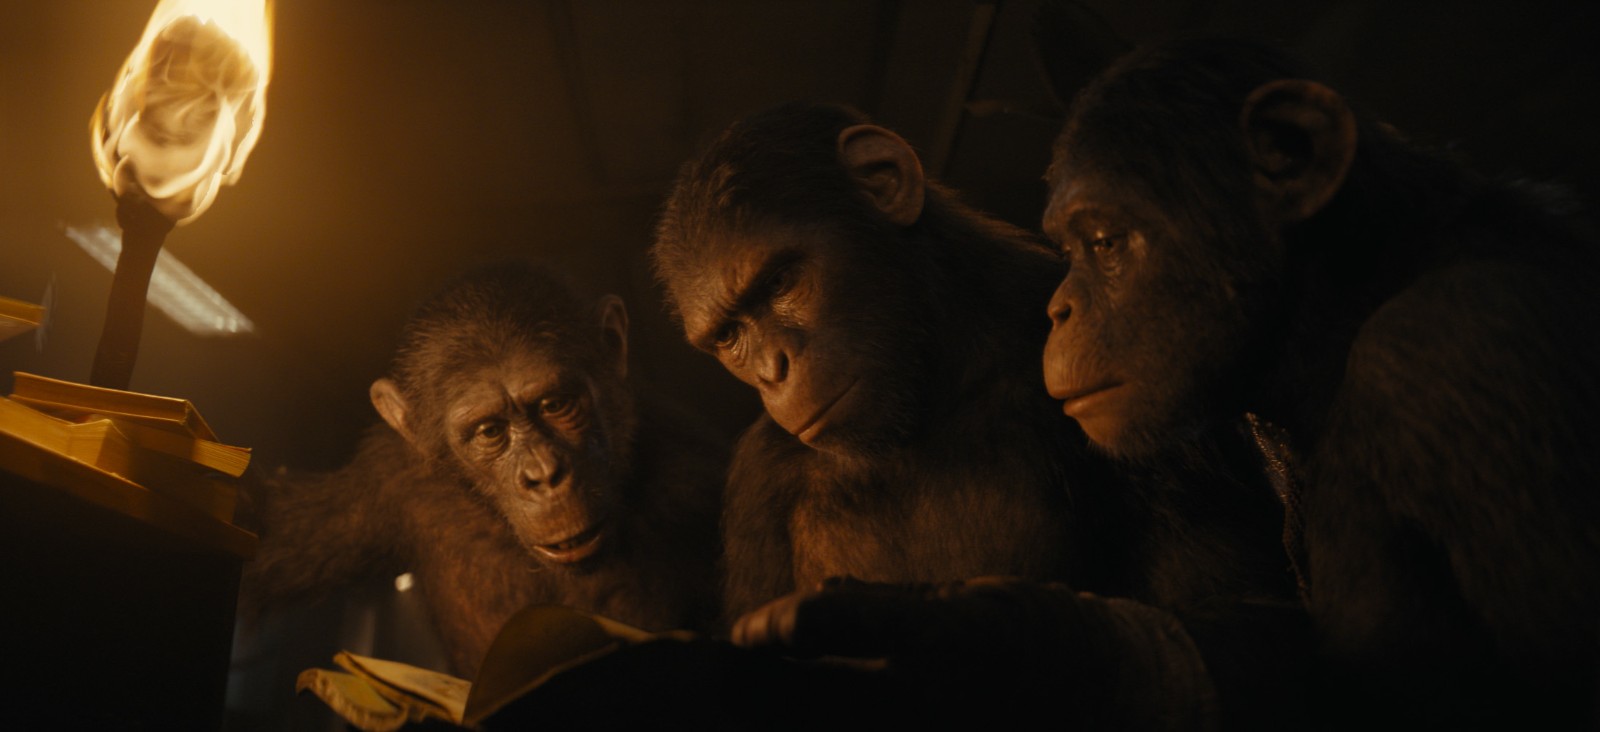 《猩球崛起4》新剧照公布 大猩猩好奇翻阅书籍